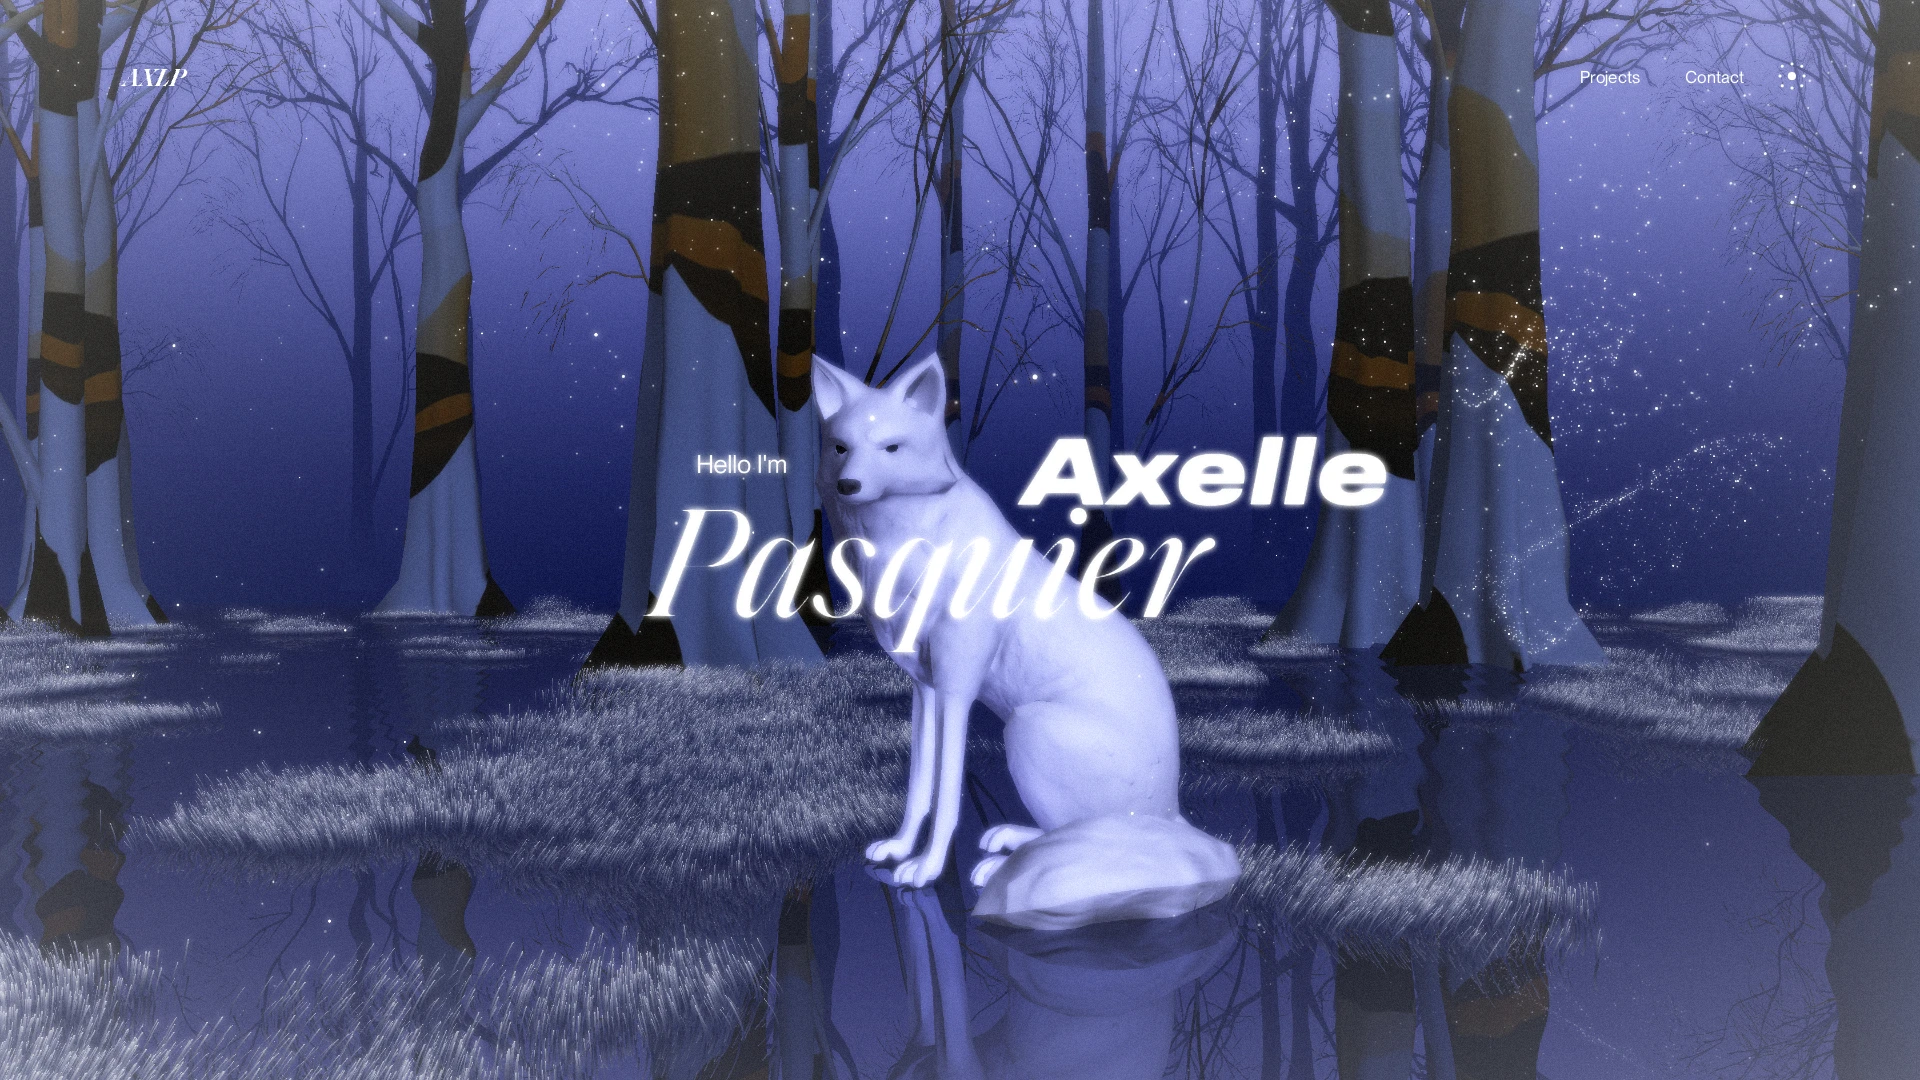 Axelle Pasquier